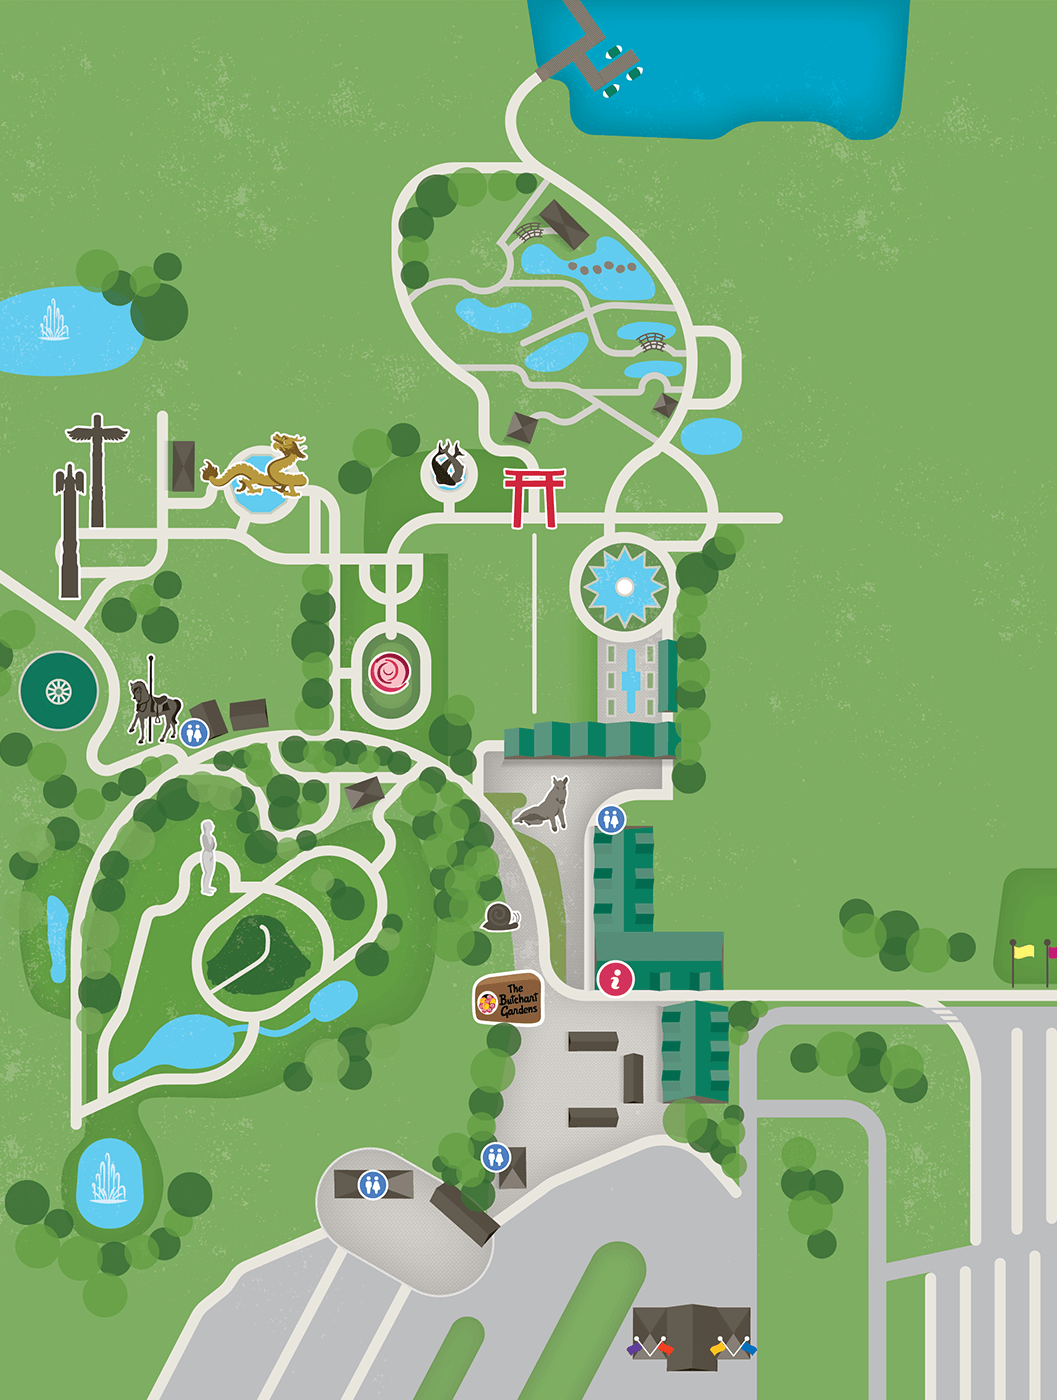 layout victoria gardens map